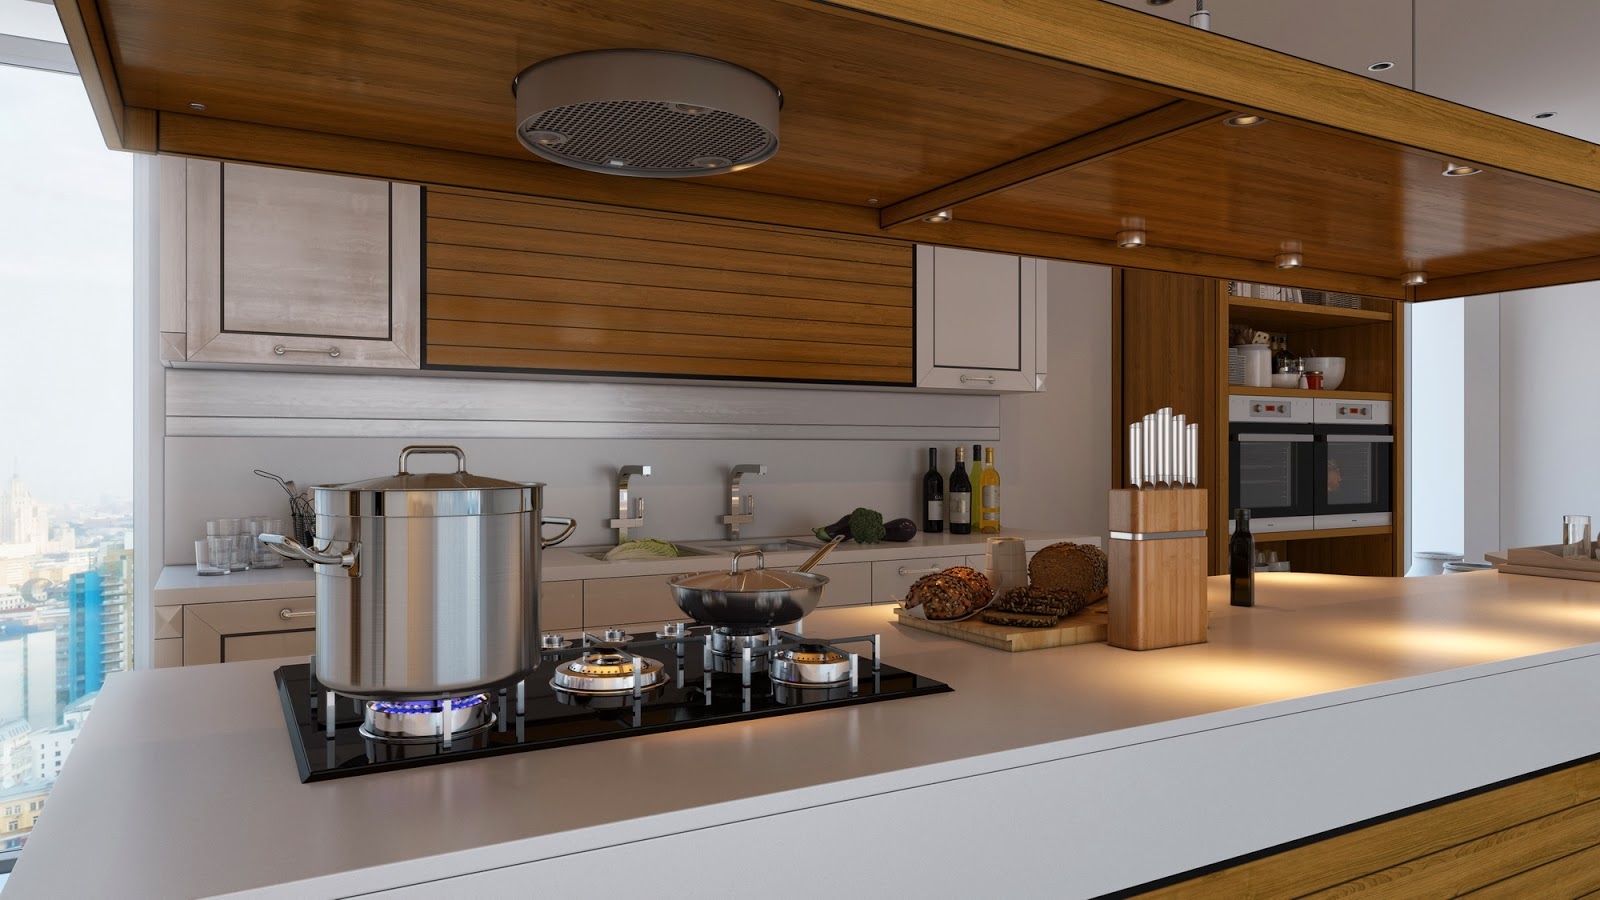 Brown kitchen interior design